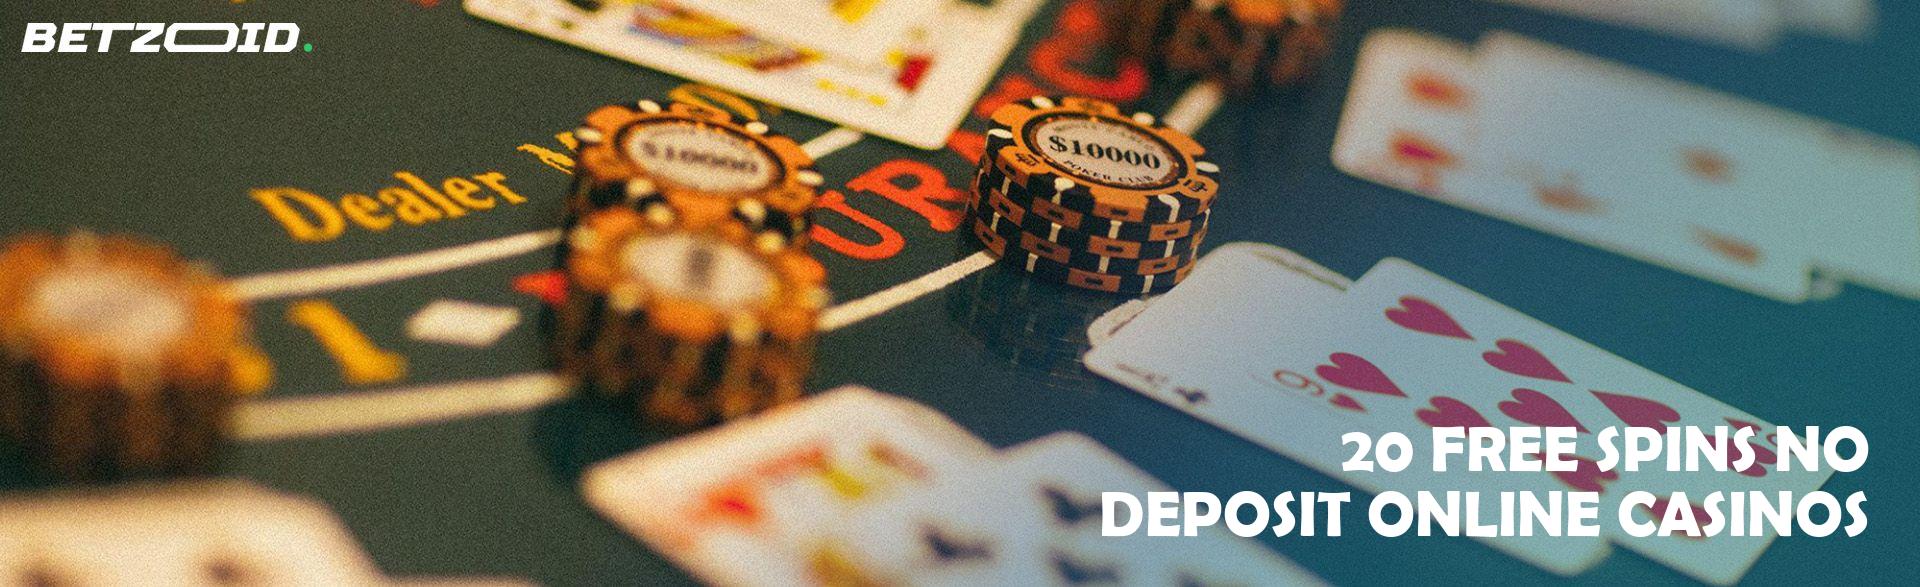 20 Free Spins No Deposit Online Casinos.